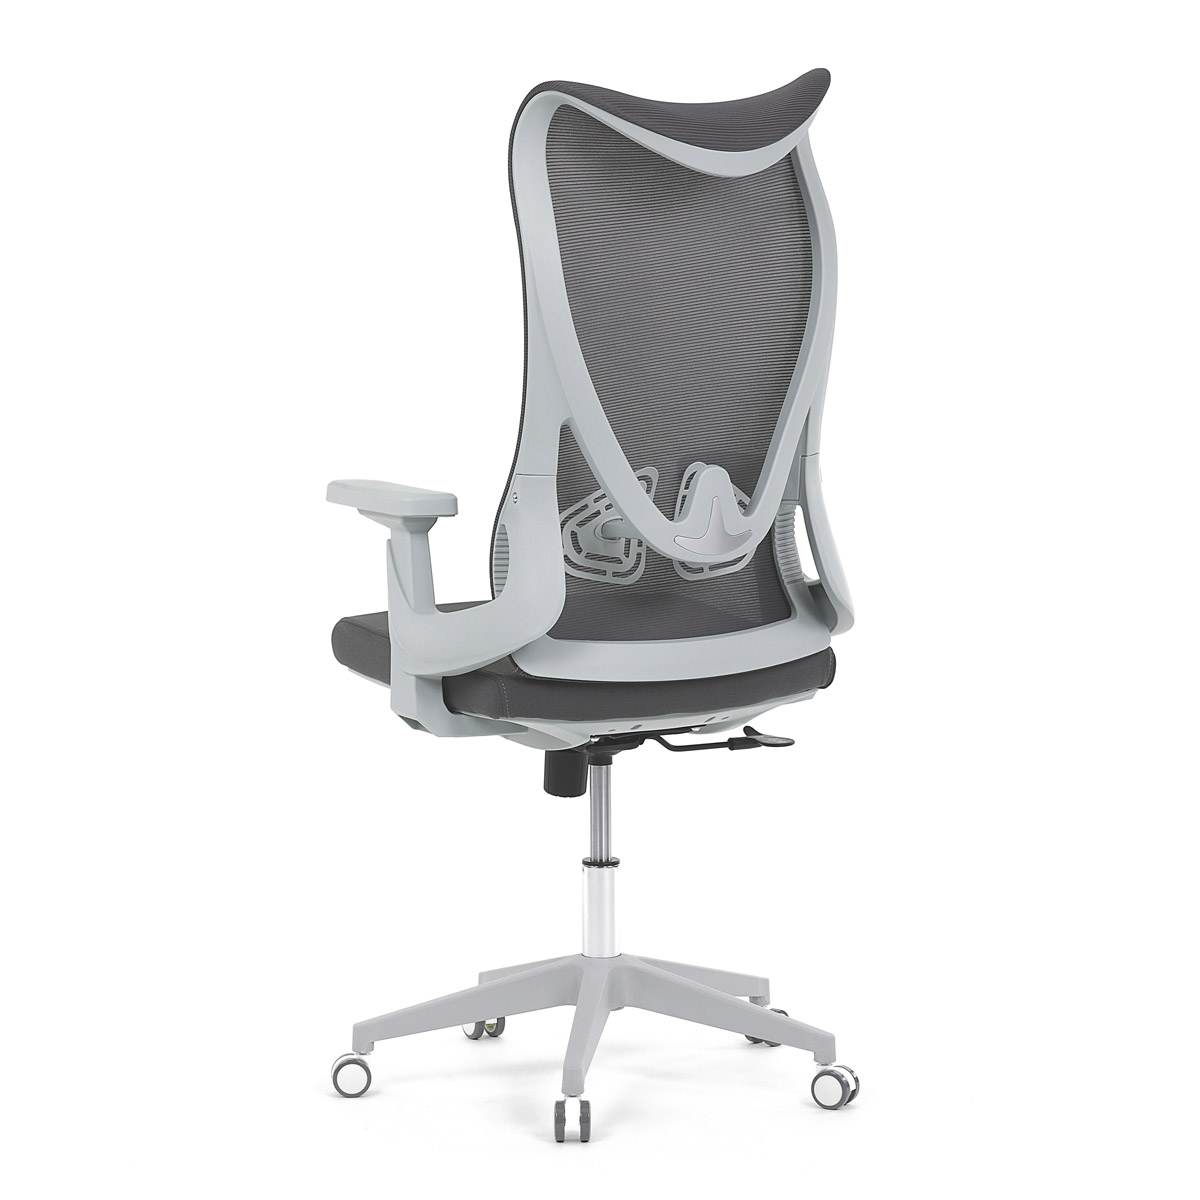 Židle kancelářská, šedý MESH, bílý plast, plastový kříž